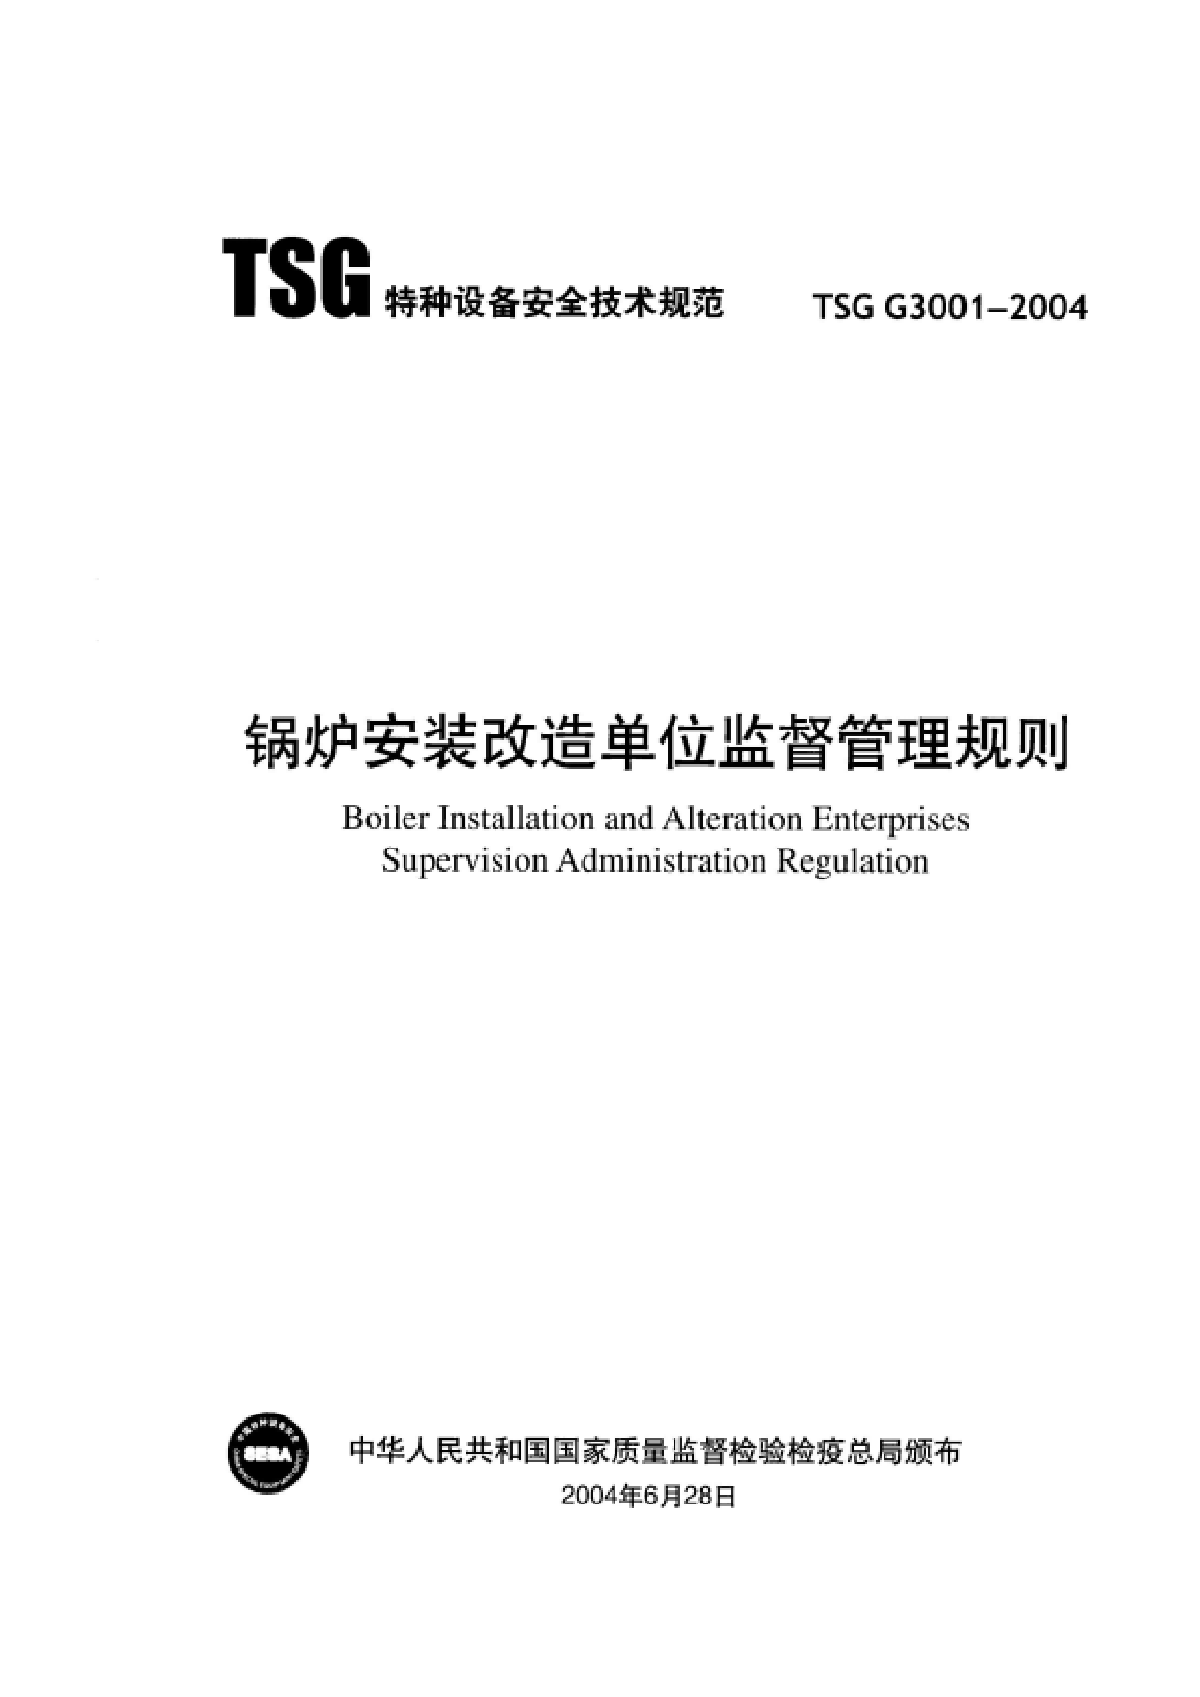 TSG G3001-2004锅炉安装改造单位监督管理规则-图一